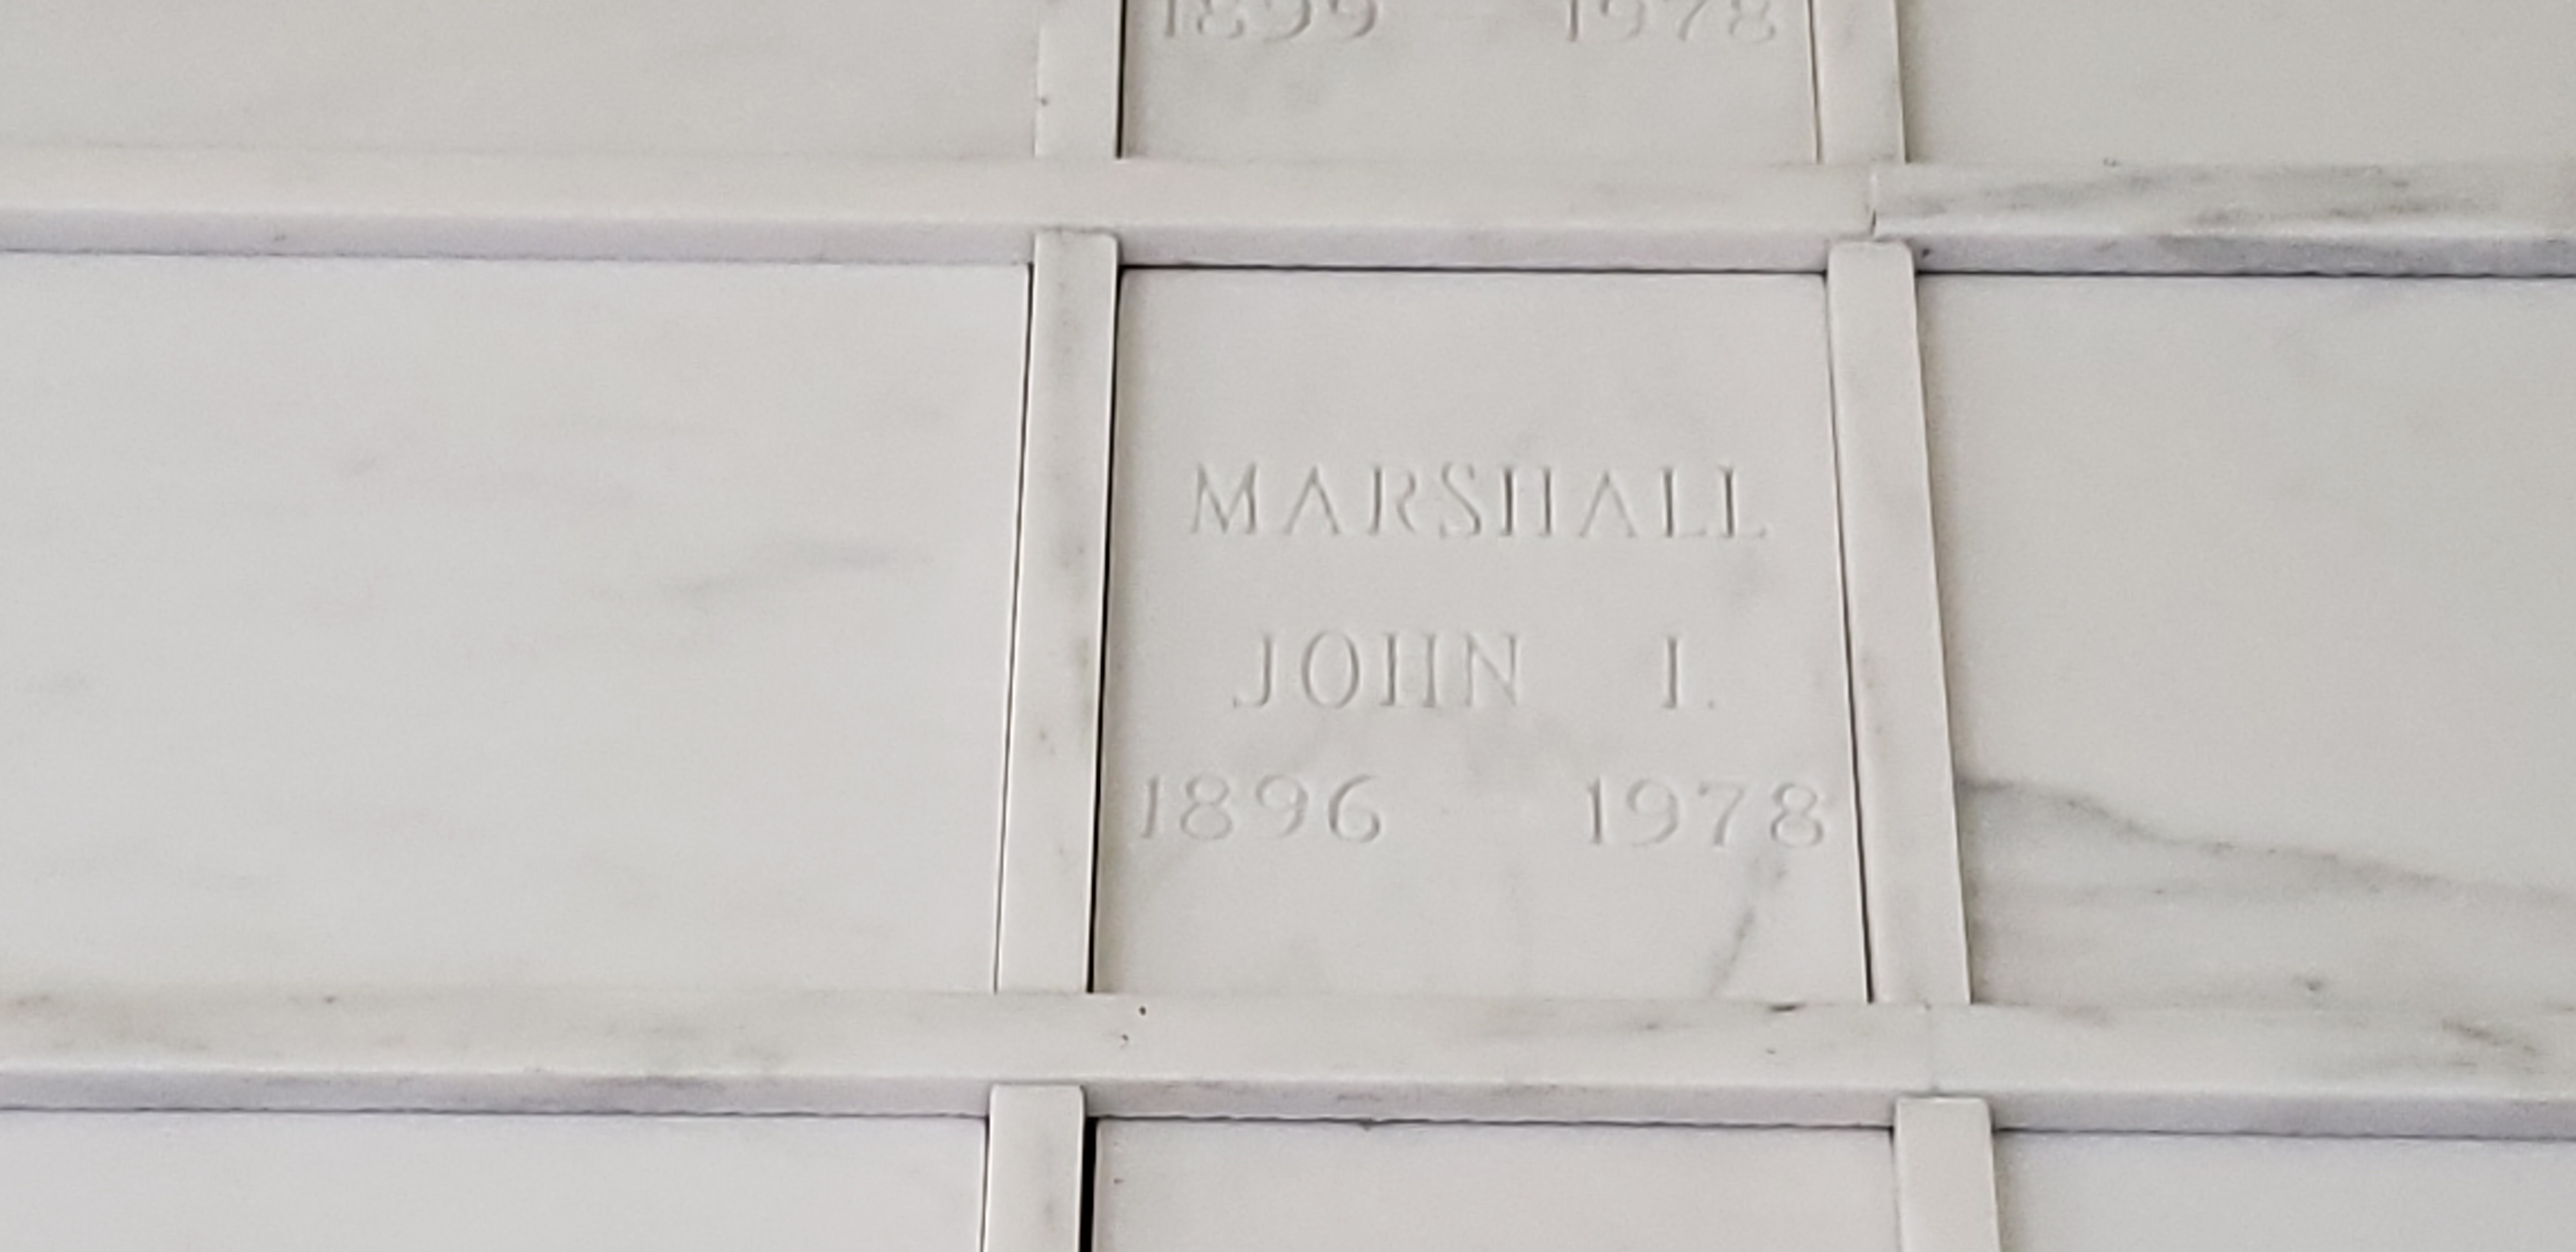 John I Marshall